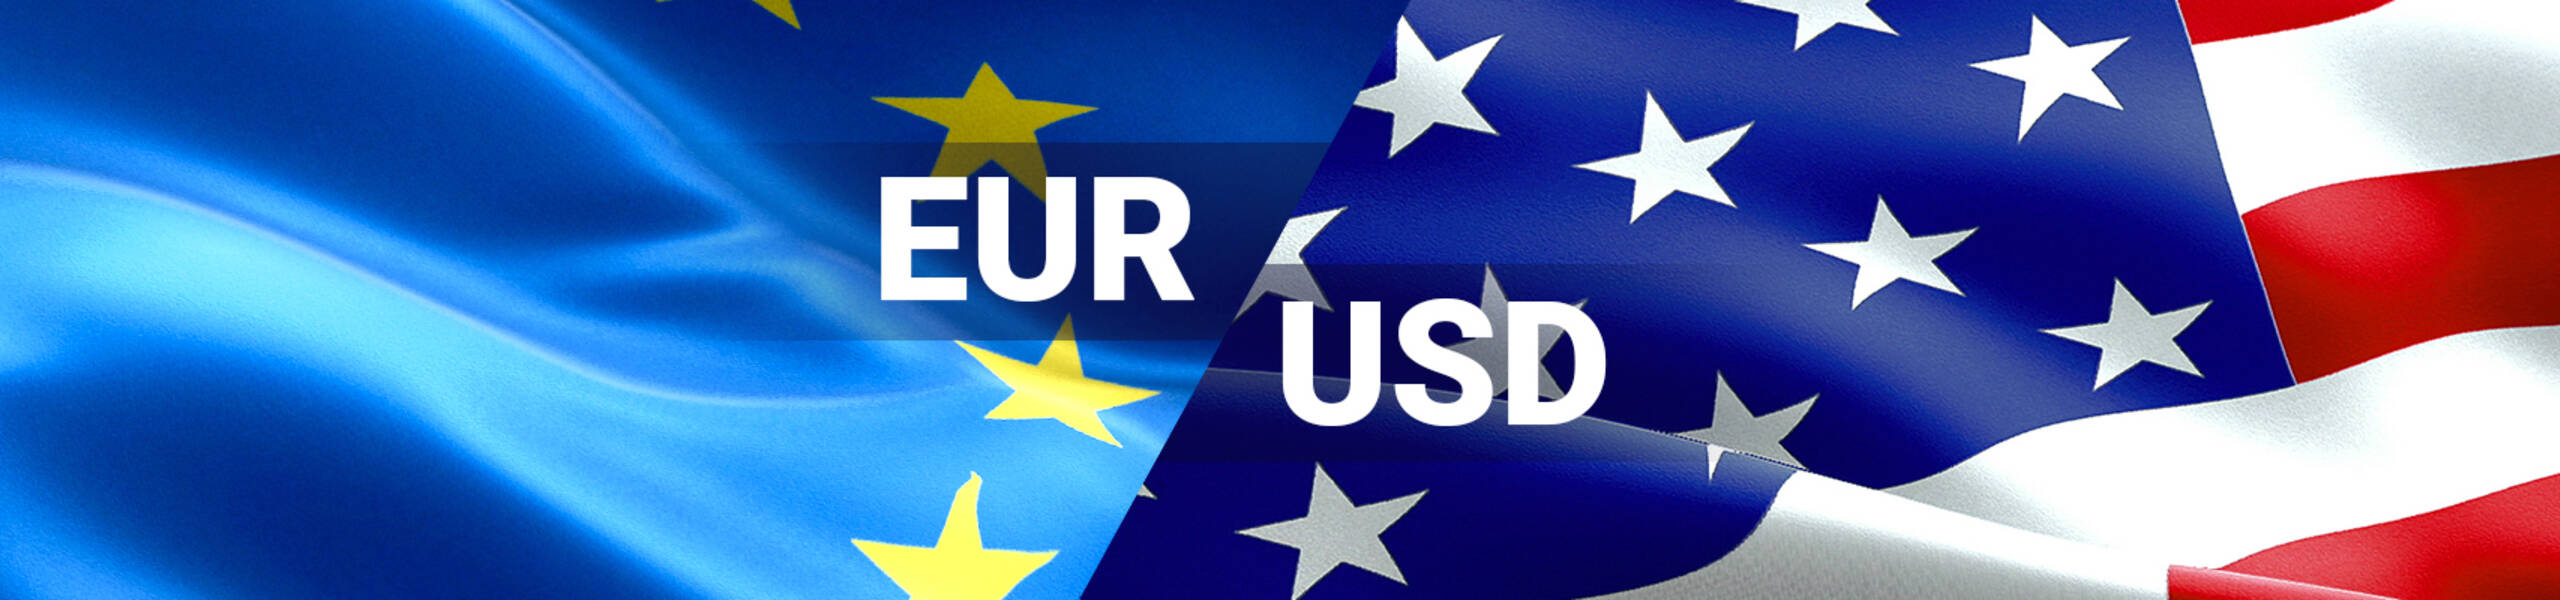 EUR/USD formando banderin correctivo